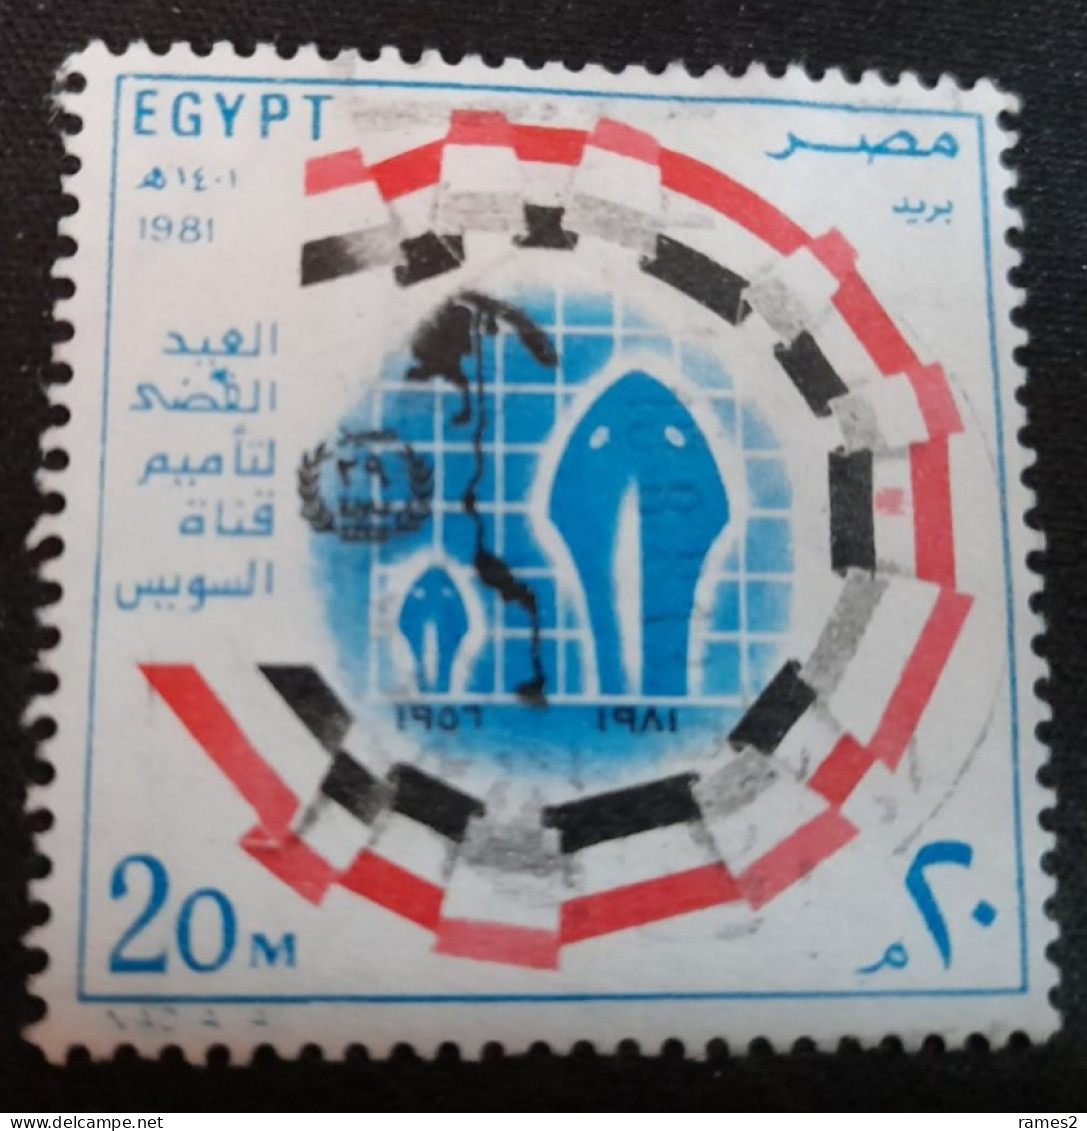 Egypte > 1953-.... République > 1980-89 > Oblitérés N° 1147 - Usati